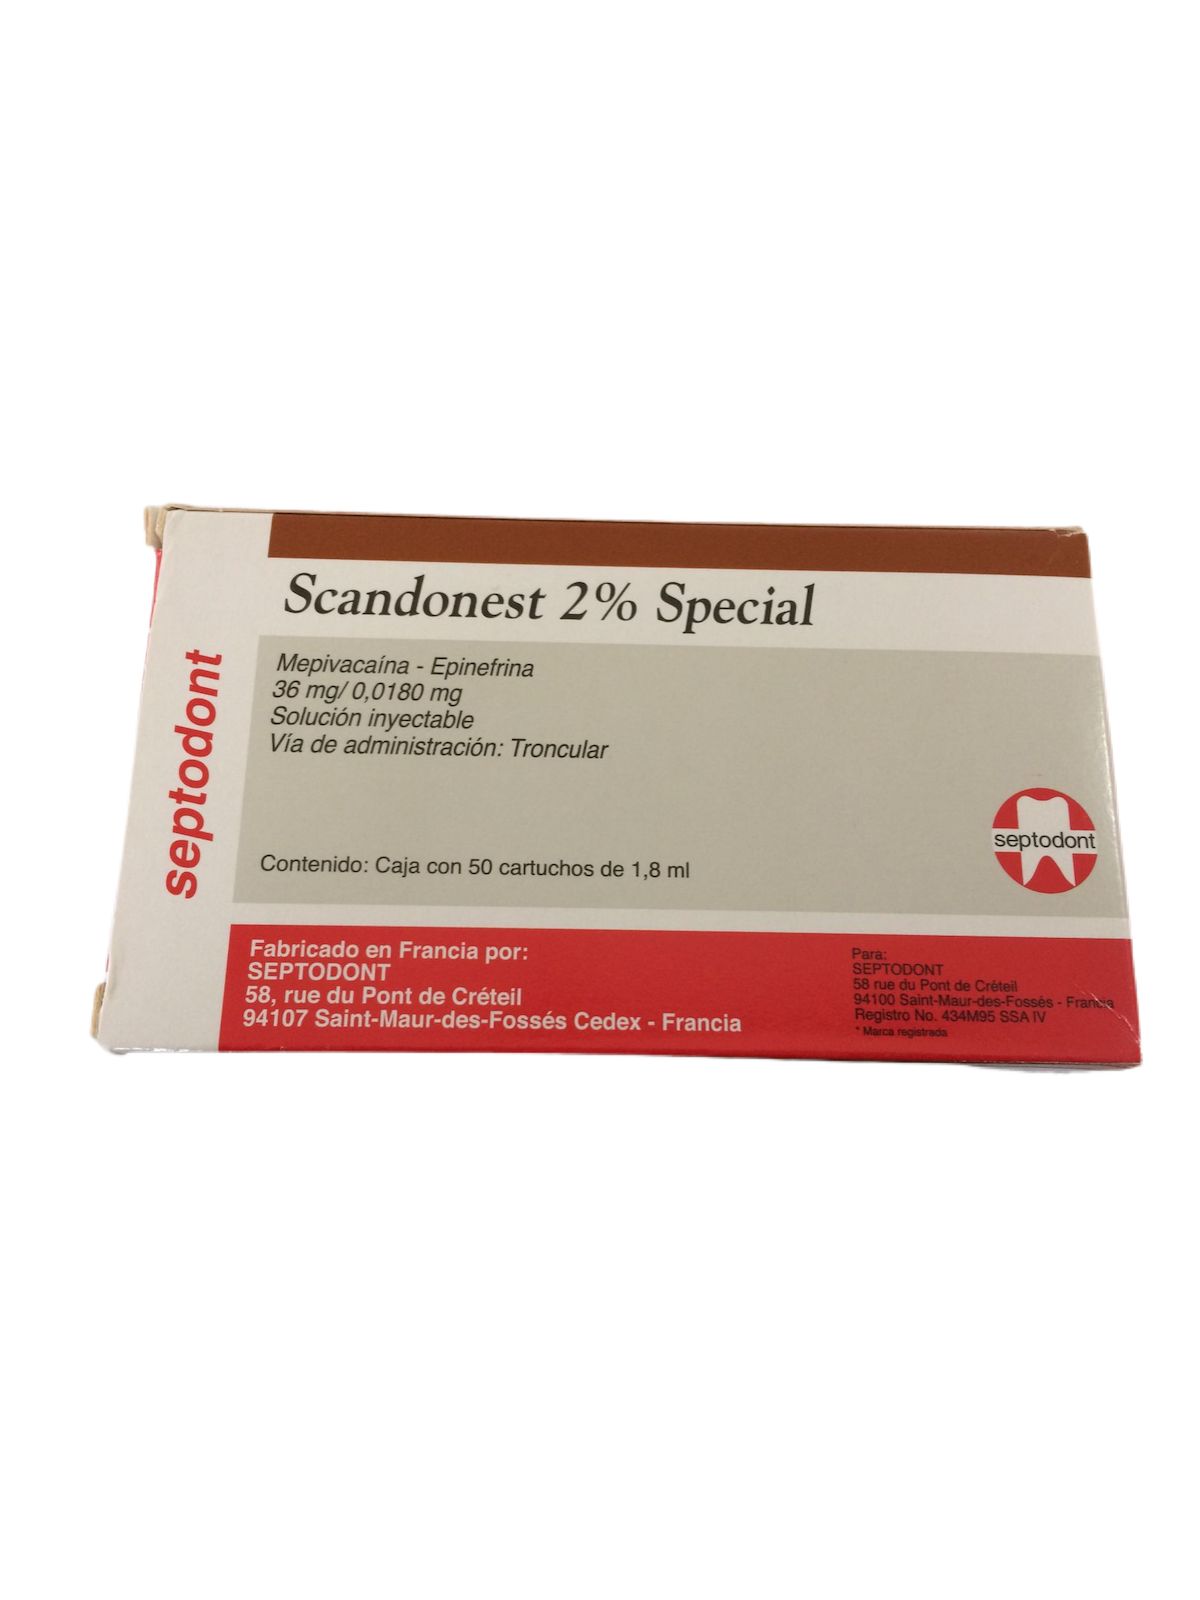 Anestesia Scandonest 2% Special